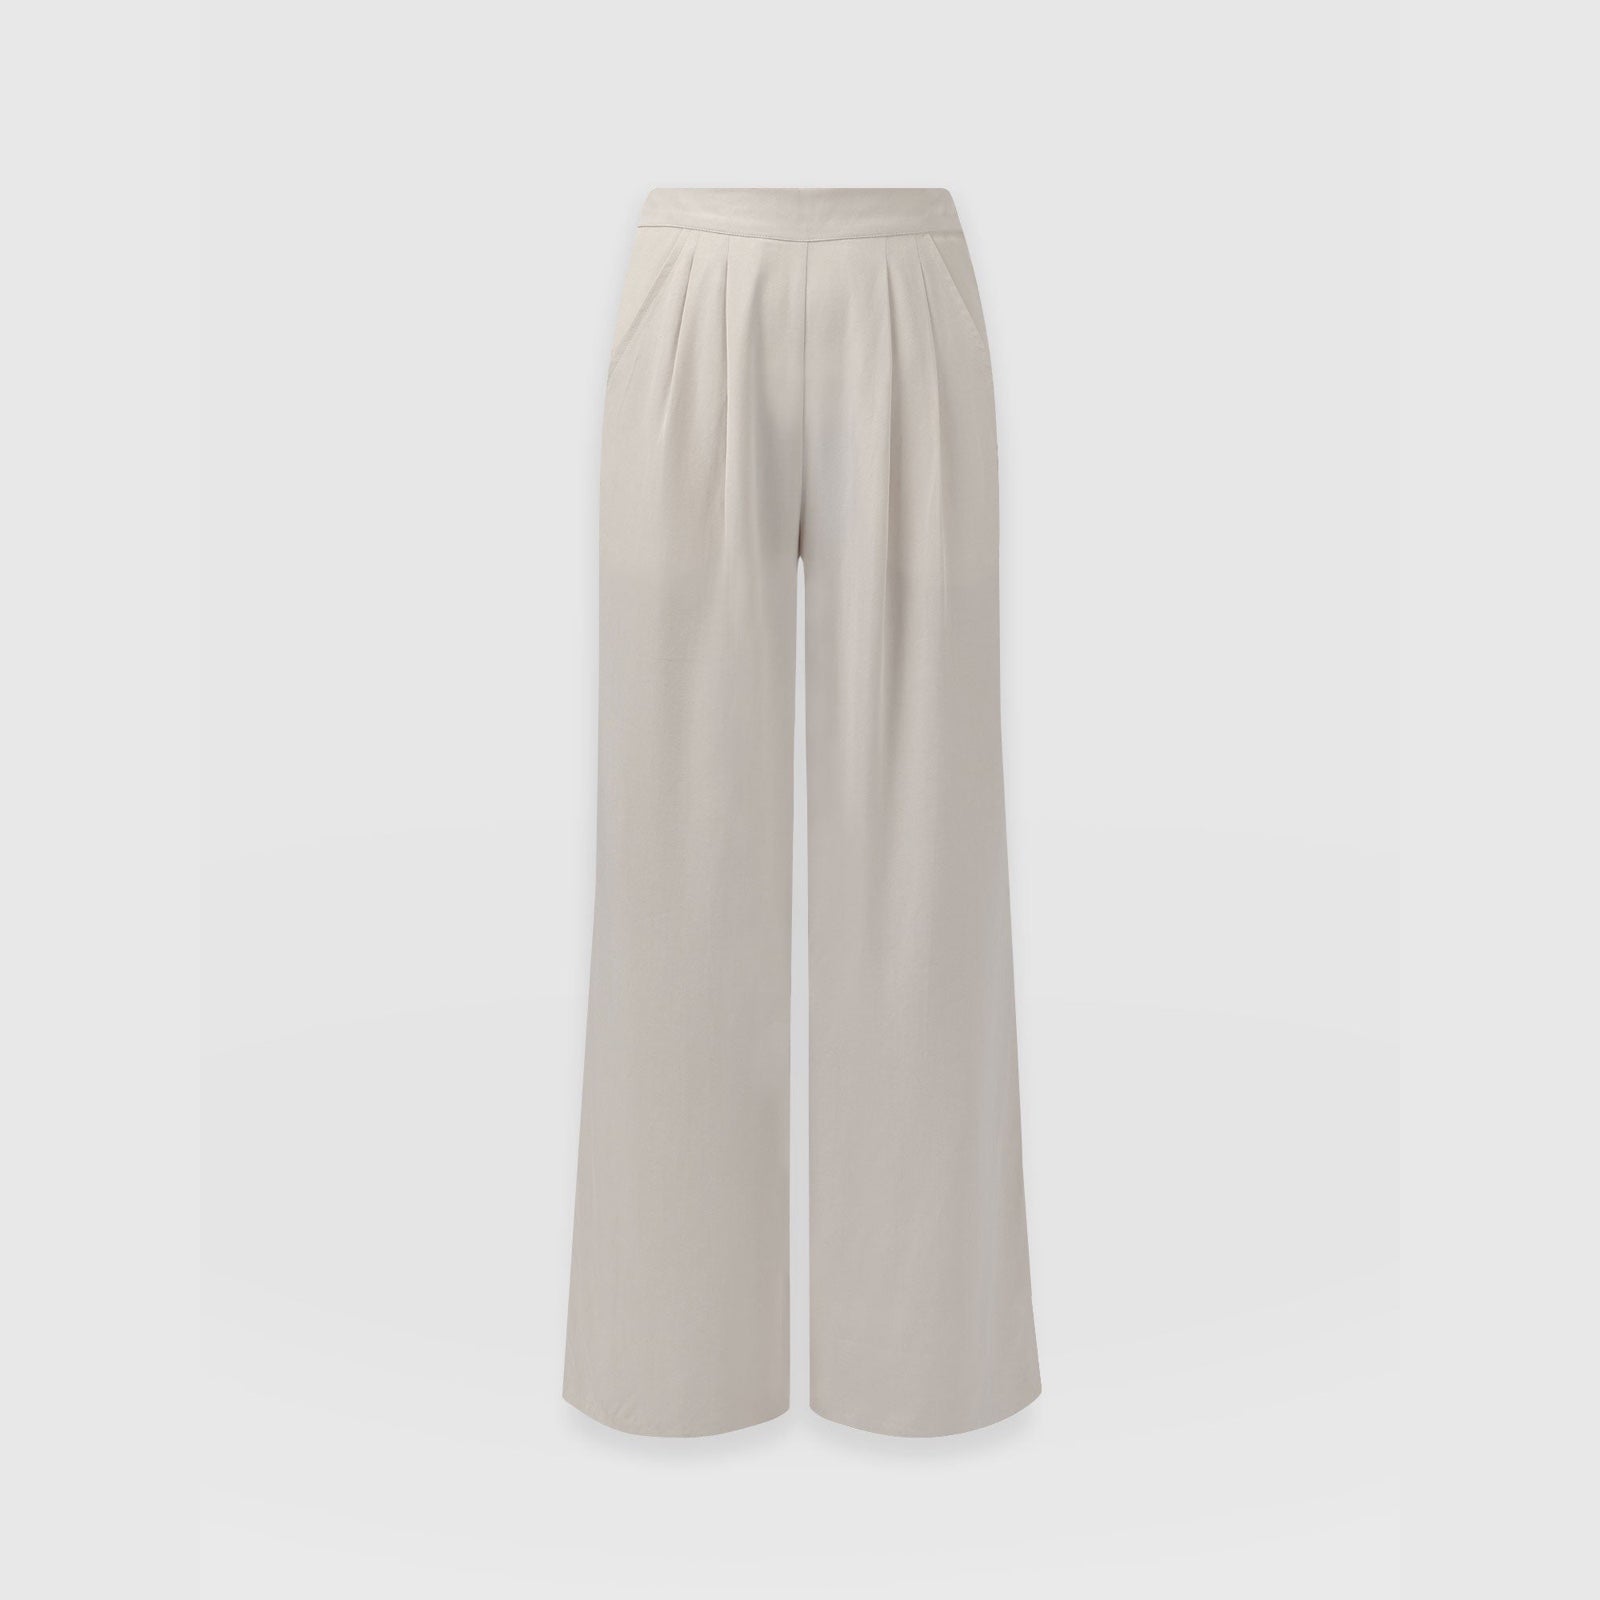 Shop Women's High Waisted Pants